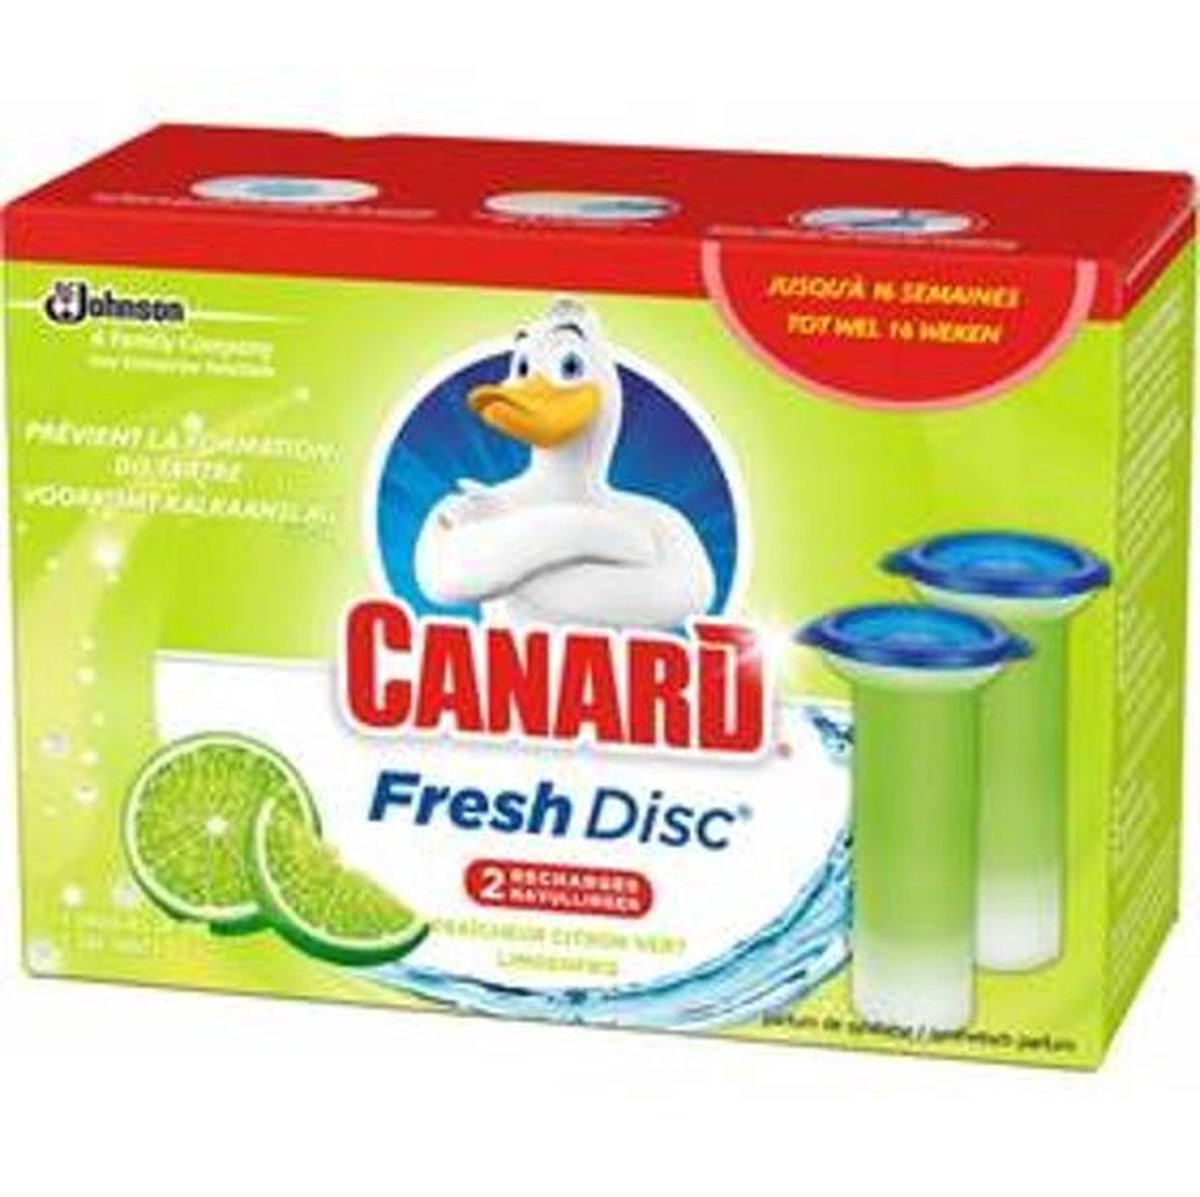 Recharges - Canard Fresh Disc - Fraîcheur Citron Vert - 72Ml